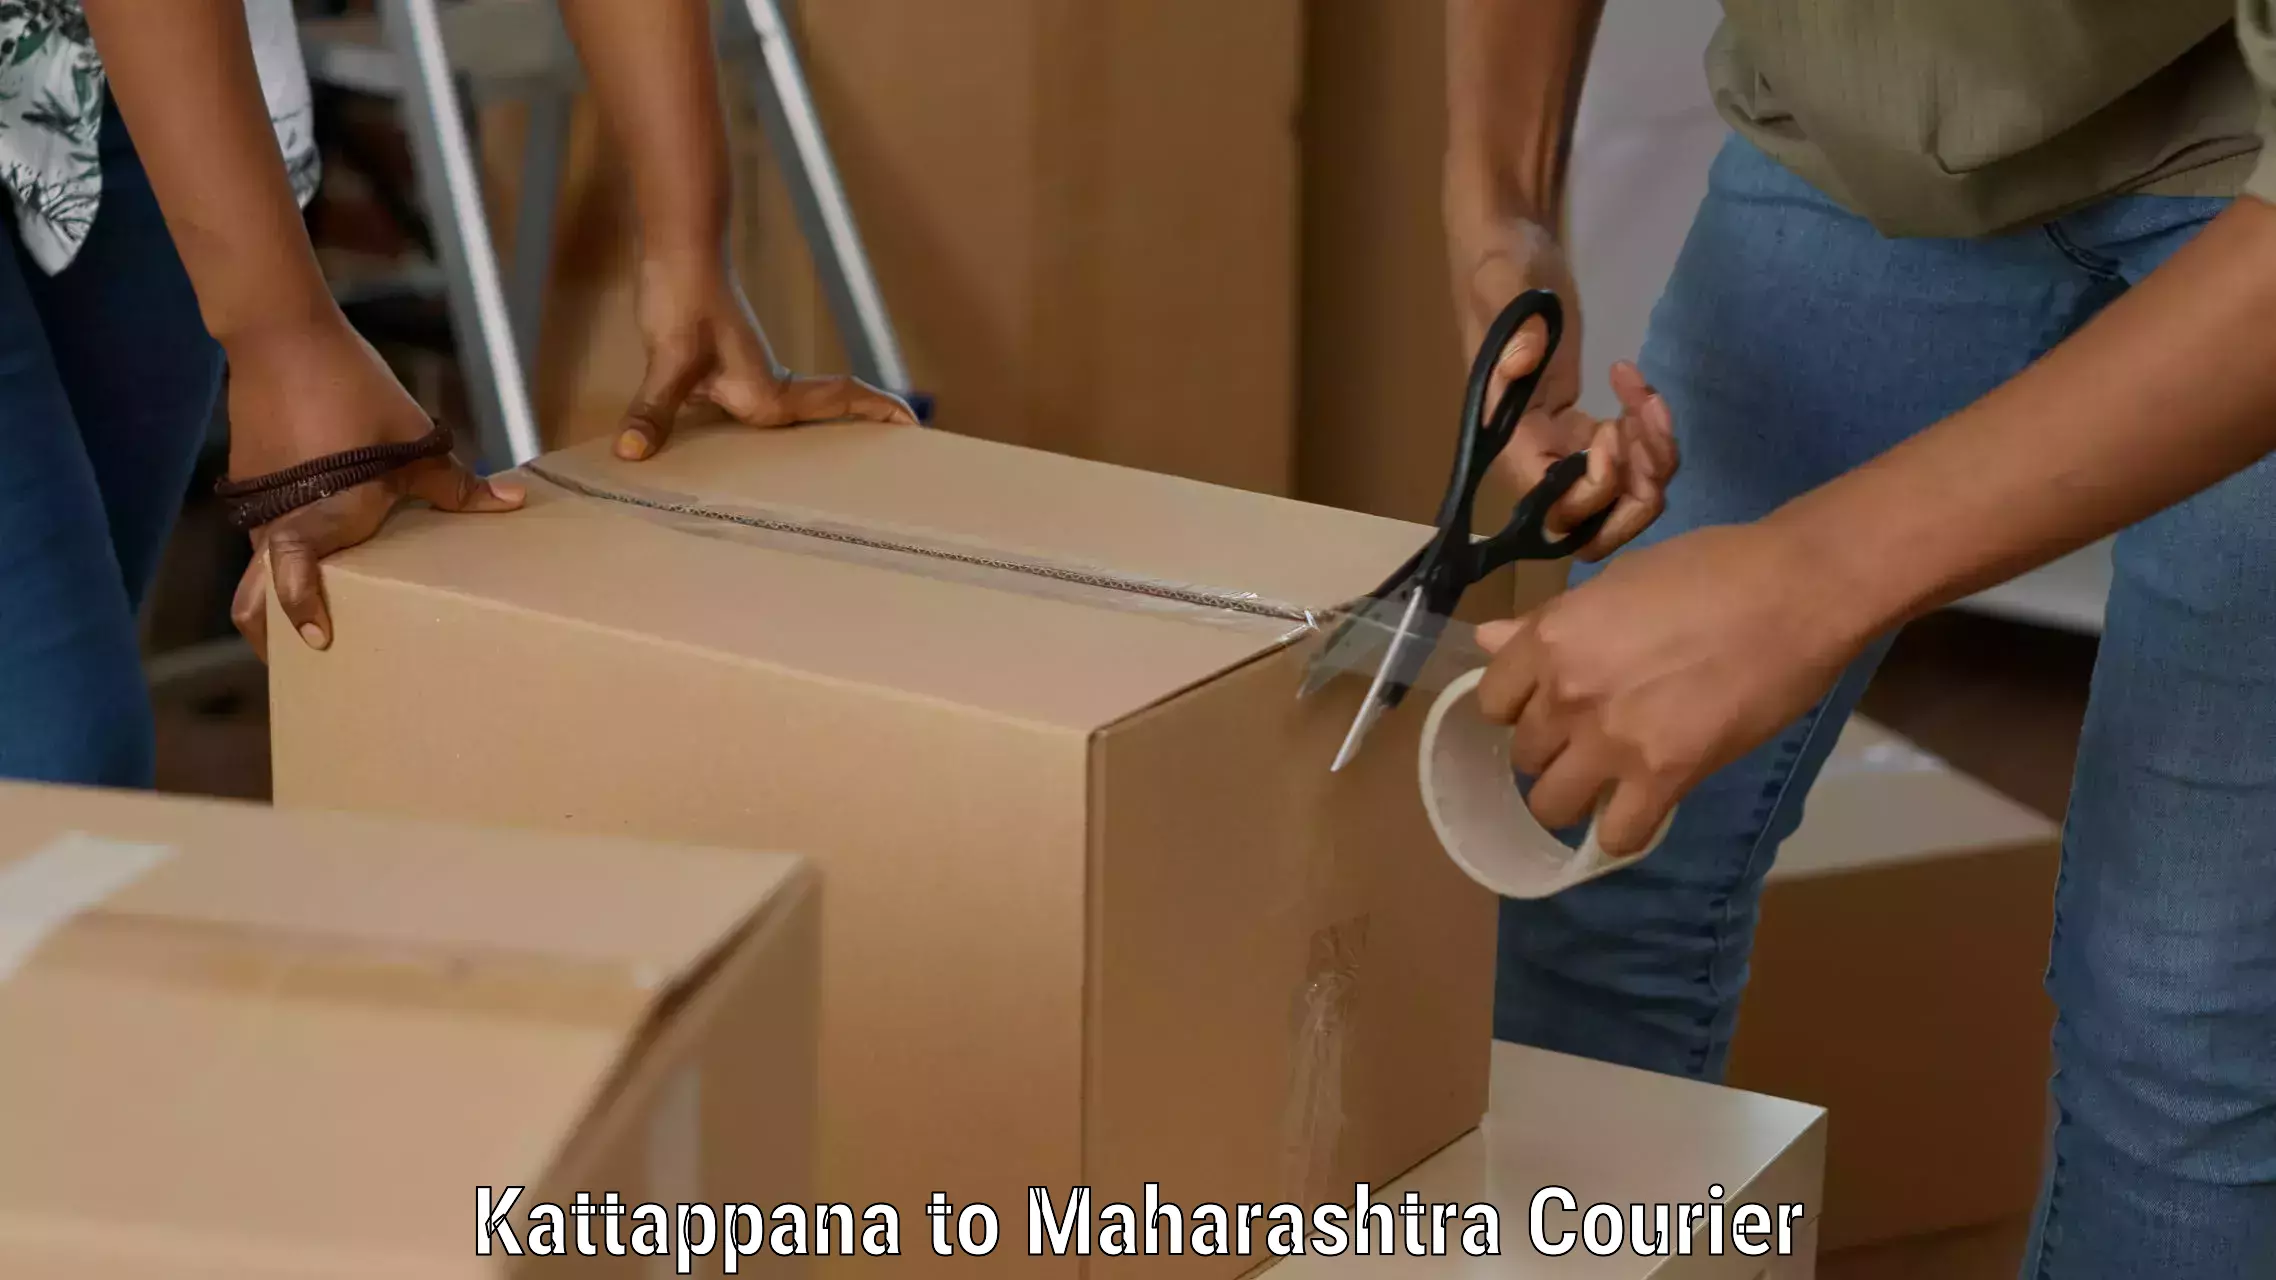 High-capacity parcel service Kattappana to Wani